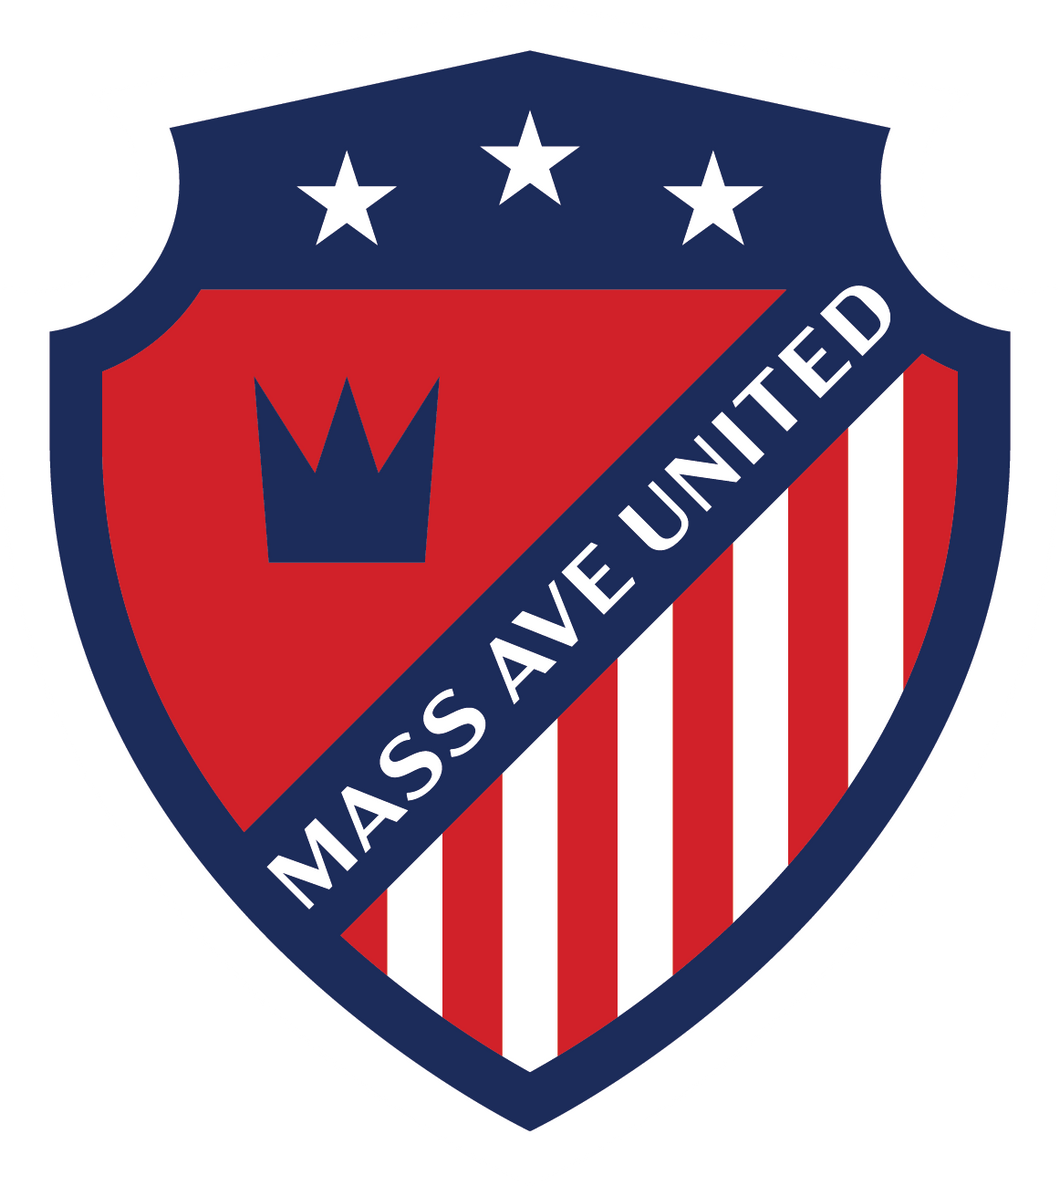 Mass Ave United Team Sponsorships